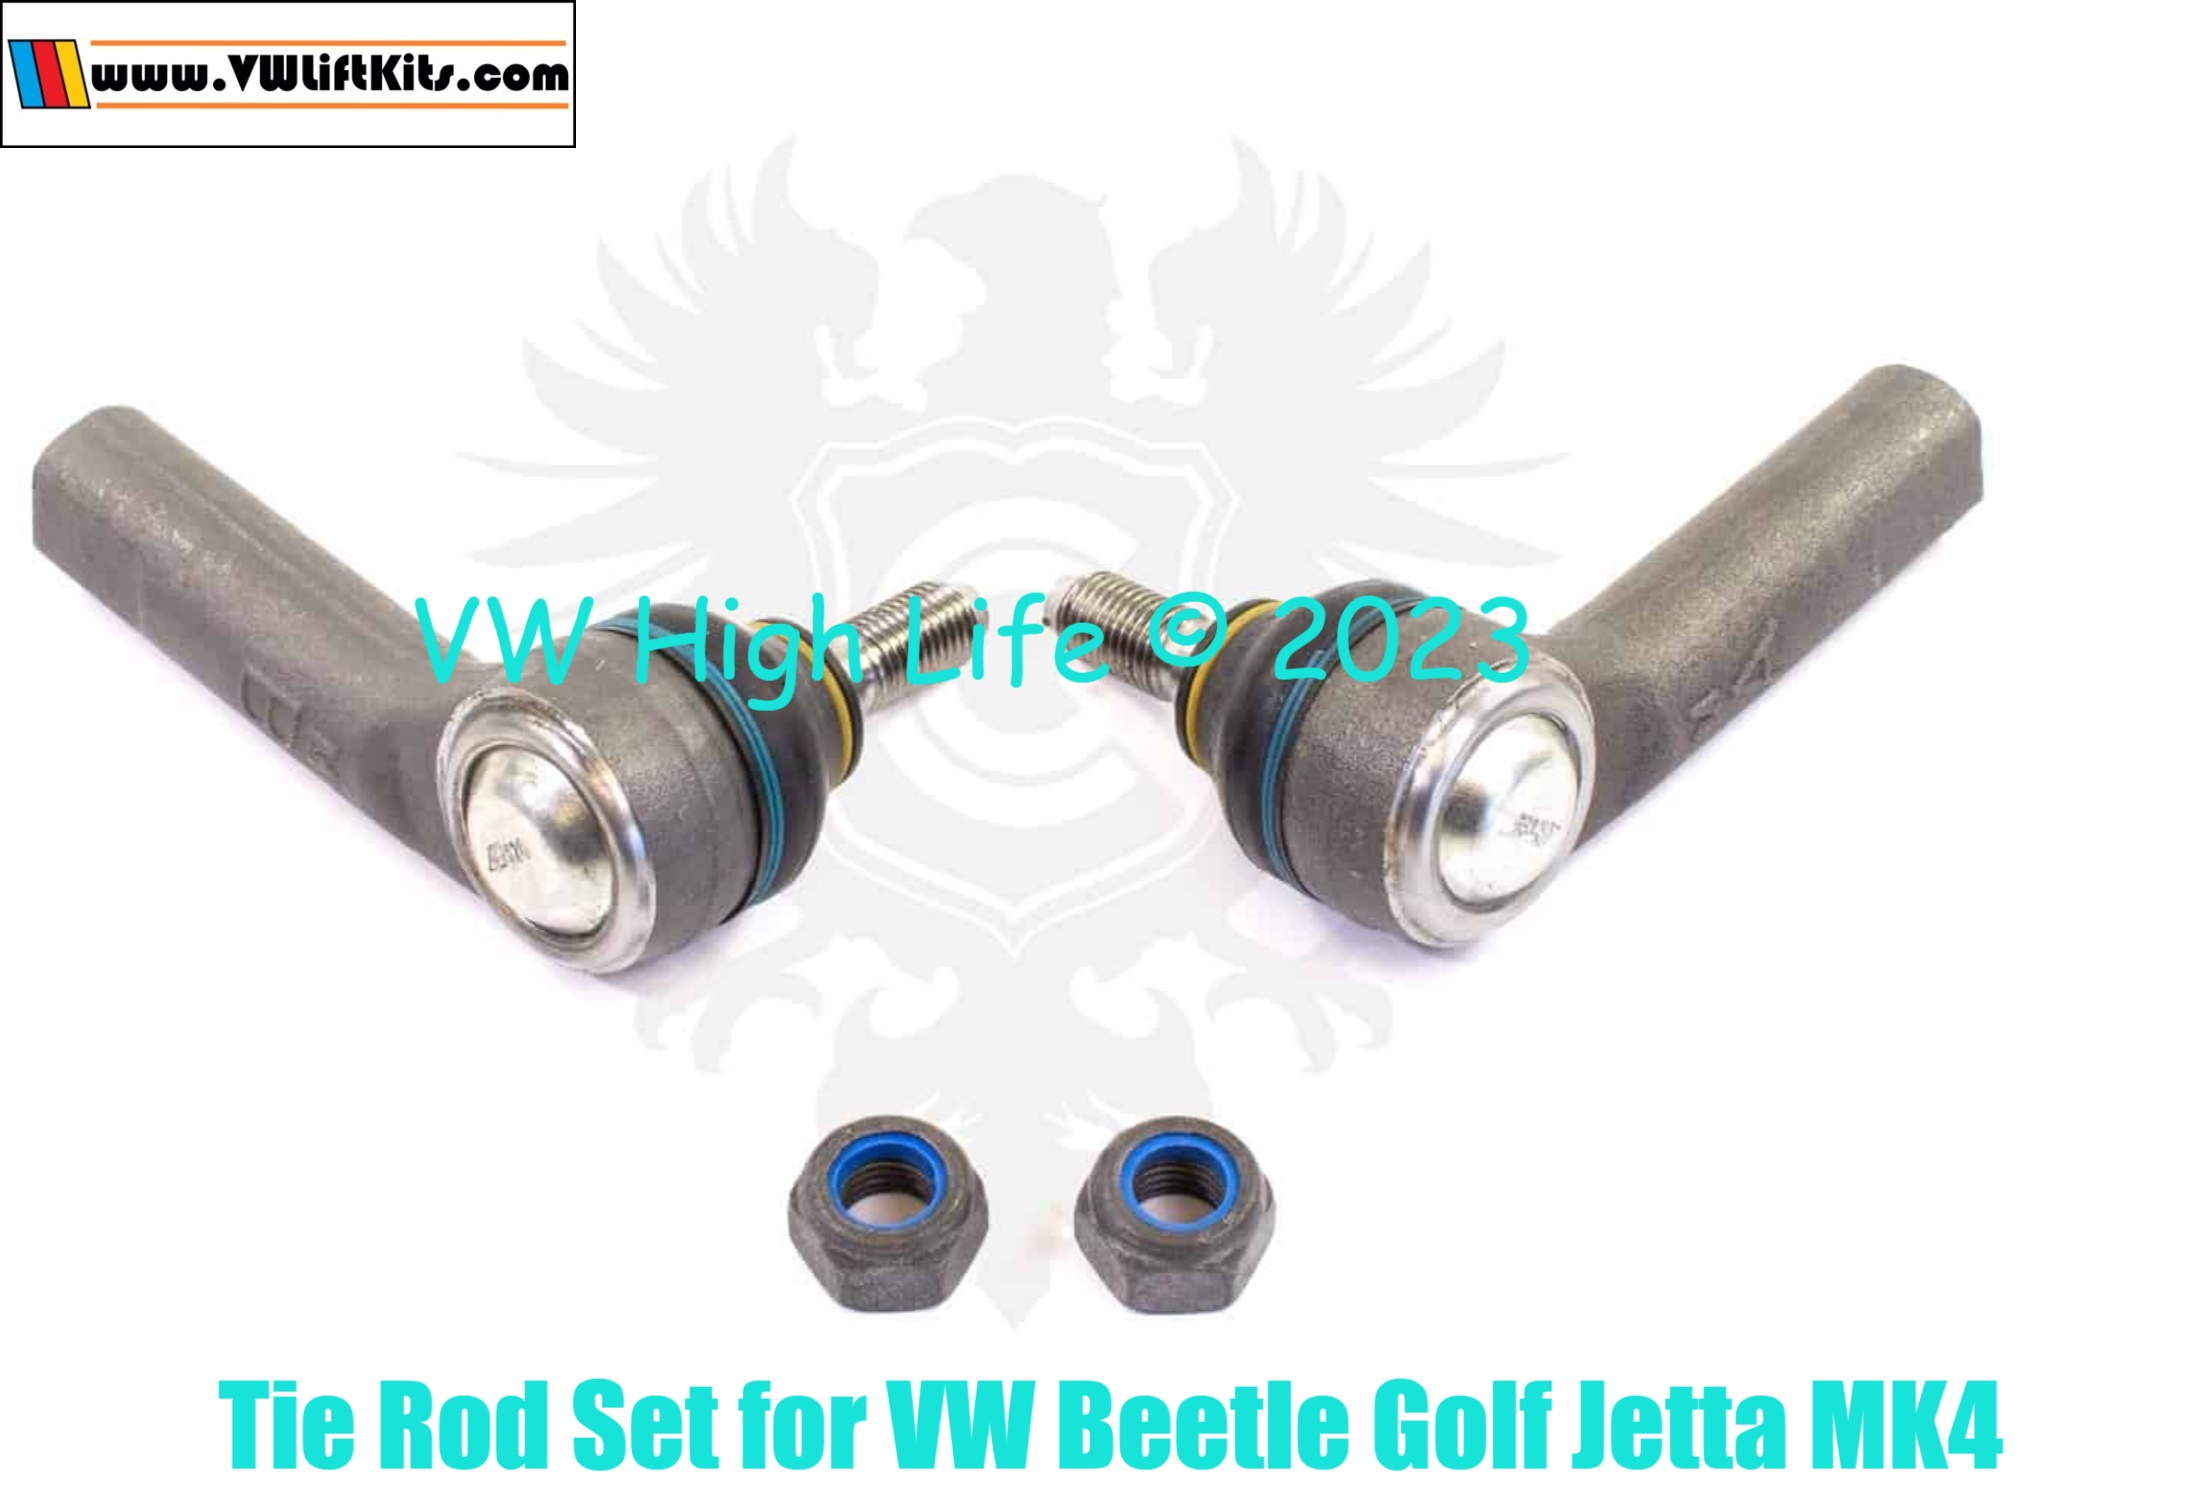 Tie Rod End Set for MK4 VW Beetle Golf Jetta